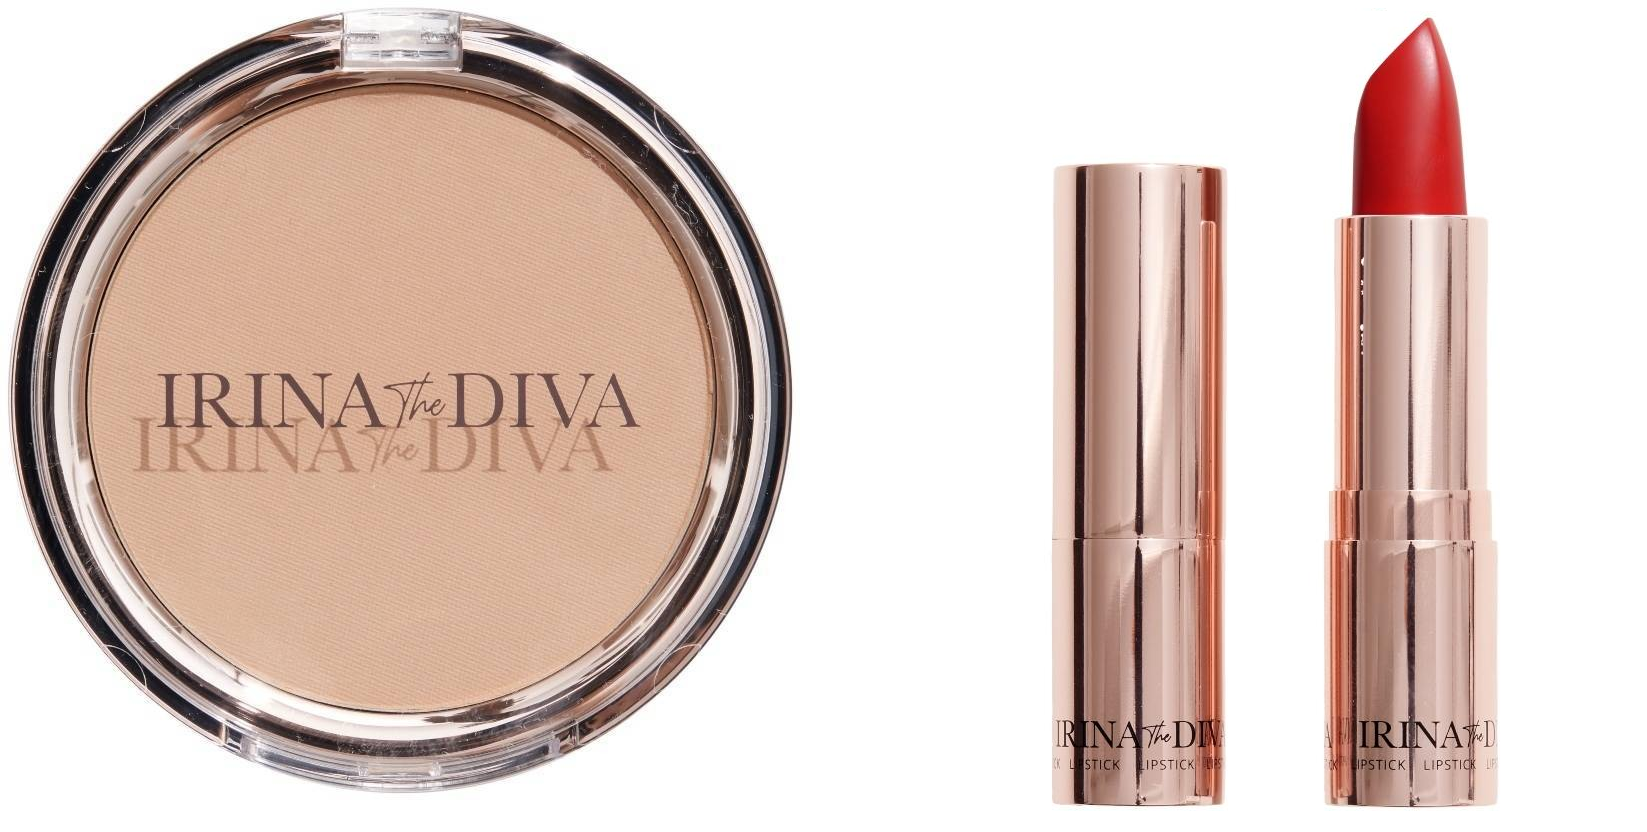 Irina The Diva - Lipstick 004 MRS. OLSEN + Filter Matte Bronzing Powder Natural Beauty 001